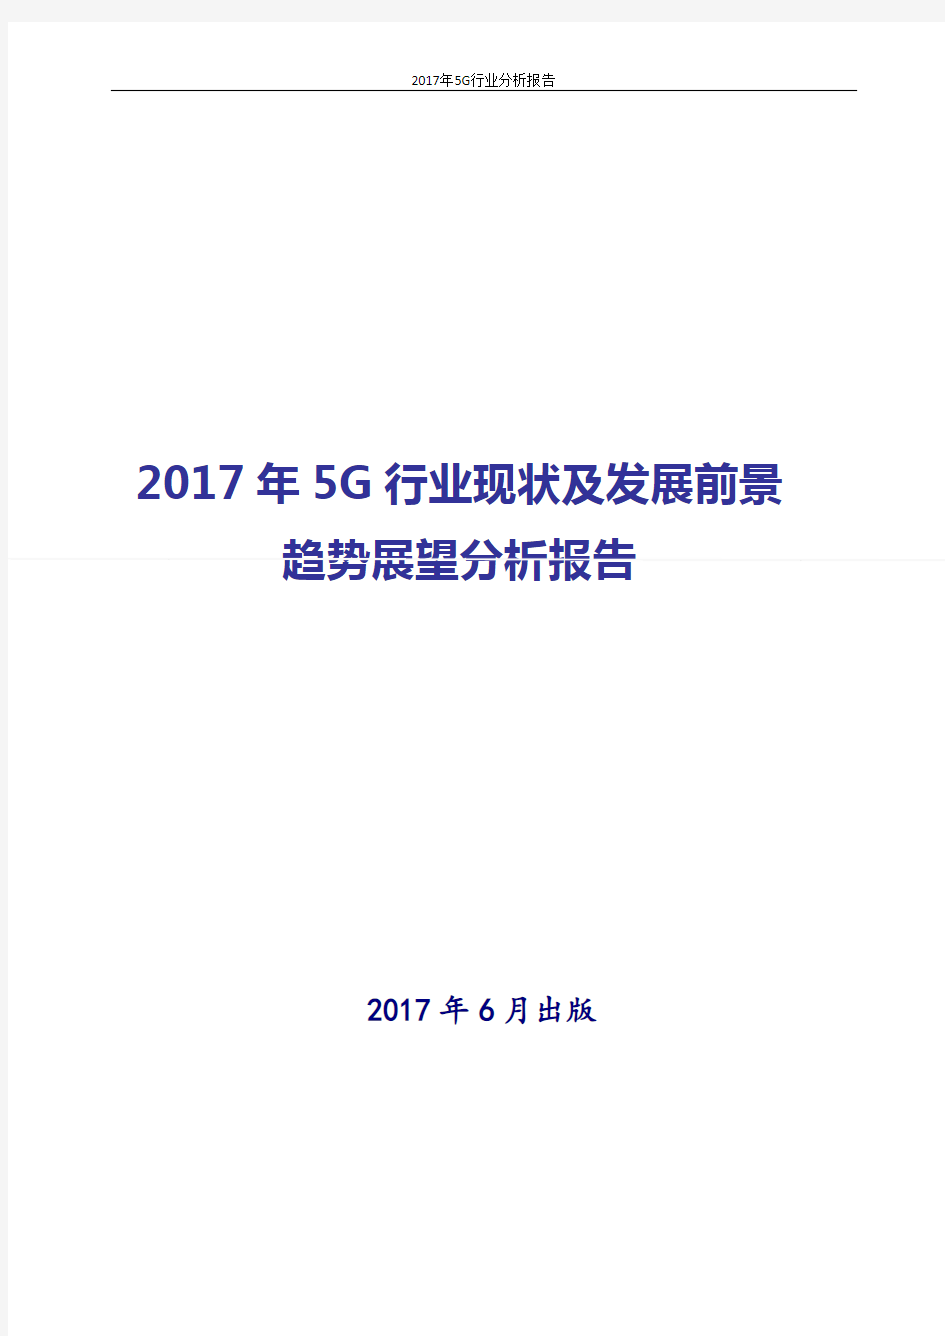 2017-2018年最新版中国5G行业发展投资策略分析报告